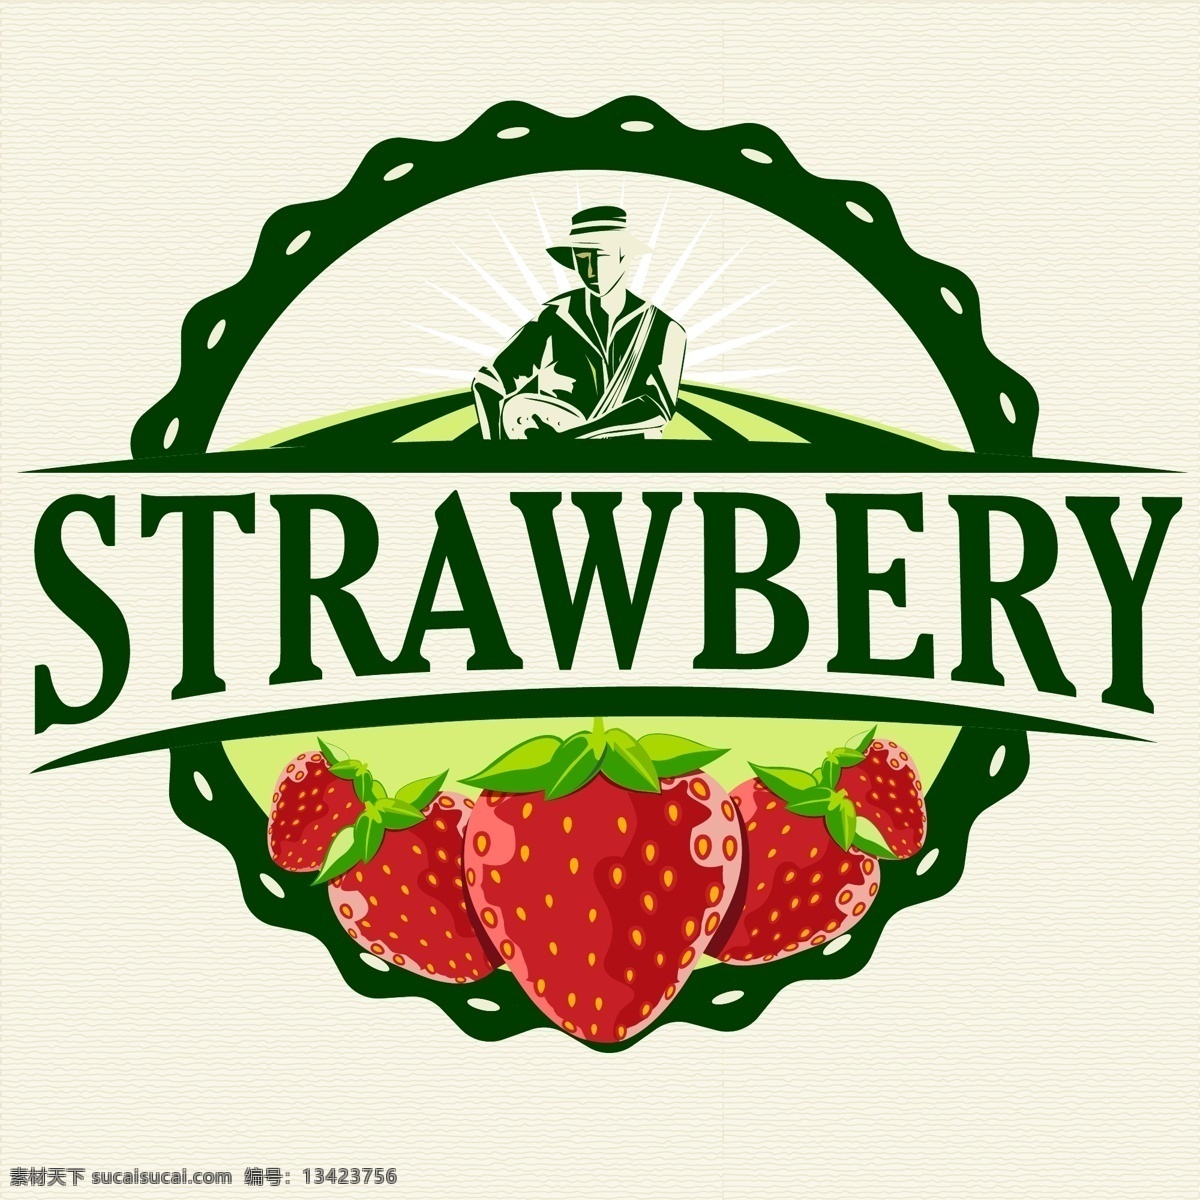 草莓 罐头 英文 农场 天然 水果 矢量水果 标签 标牌 欧美 边框 商标 图标 贴牌 不干胶设计 自然 绿色 美食 美味 矢量集 餐饮美食 生活百科